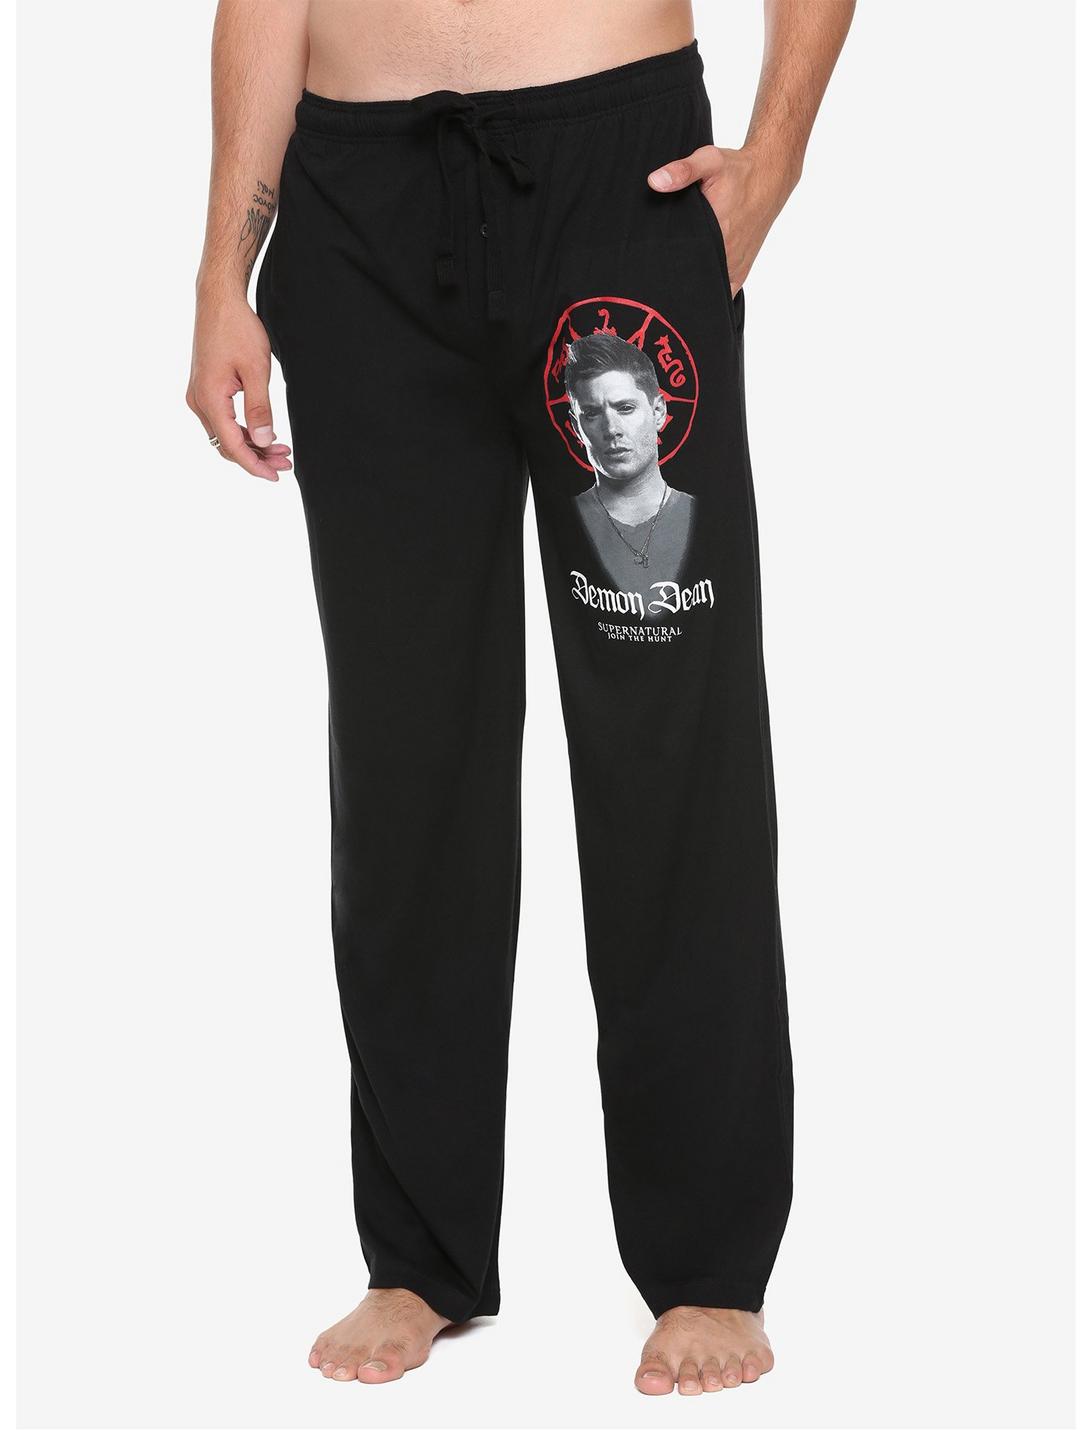 Supernatural Demon Dean Guys Pajama Pants, BLACK, hi-res